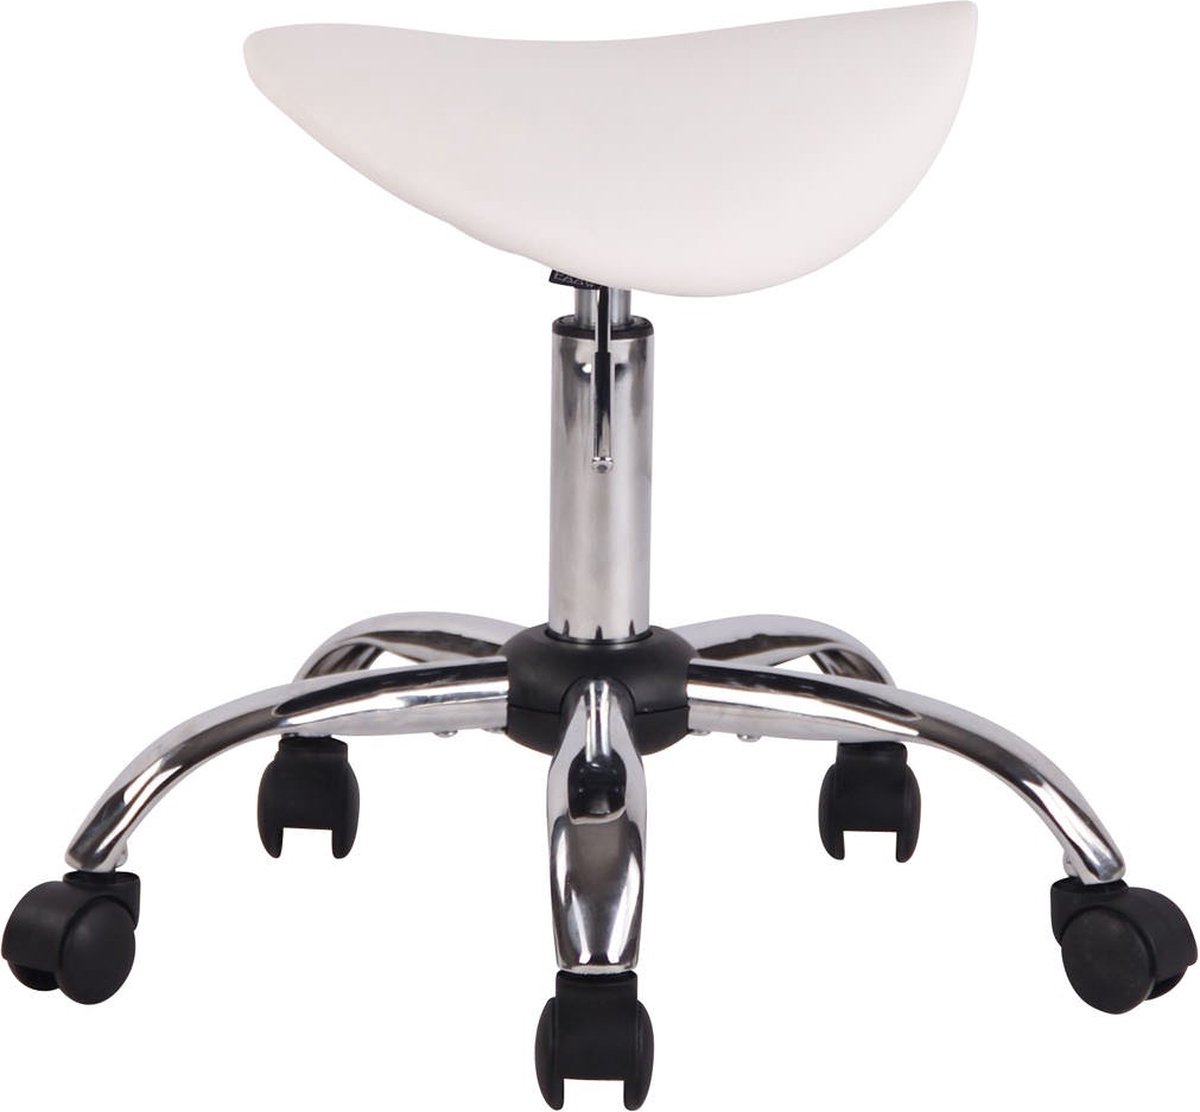 Luxe Werkkruk Beppe - Wit - Op wielen - Bureaustoel - In hoogte verstelbaar 46 - 58 cm - kunstleer